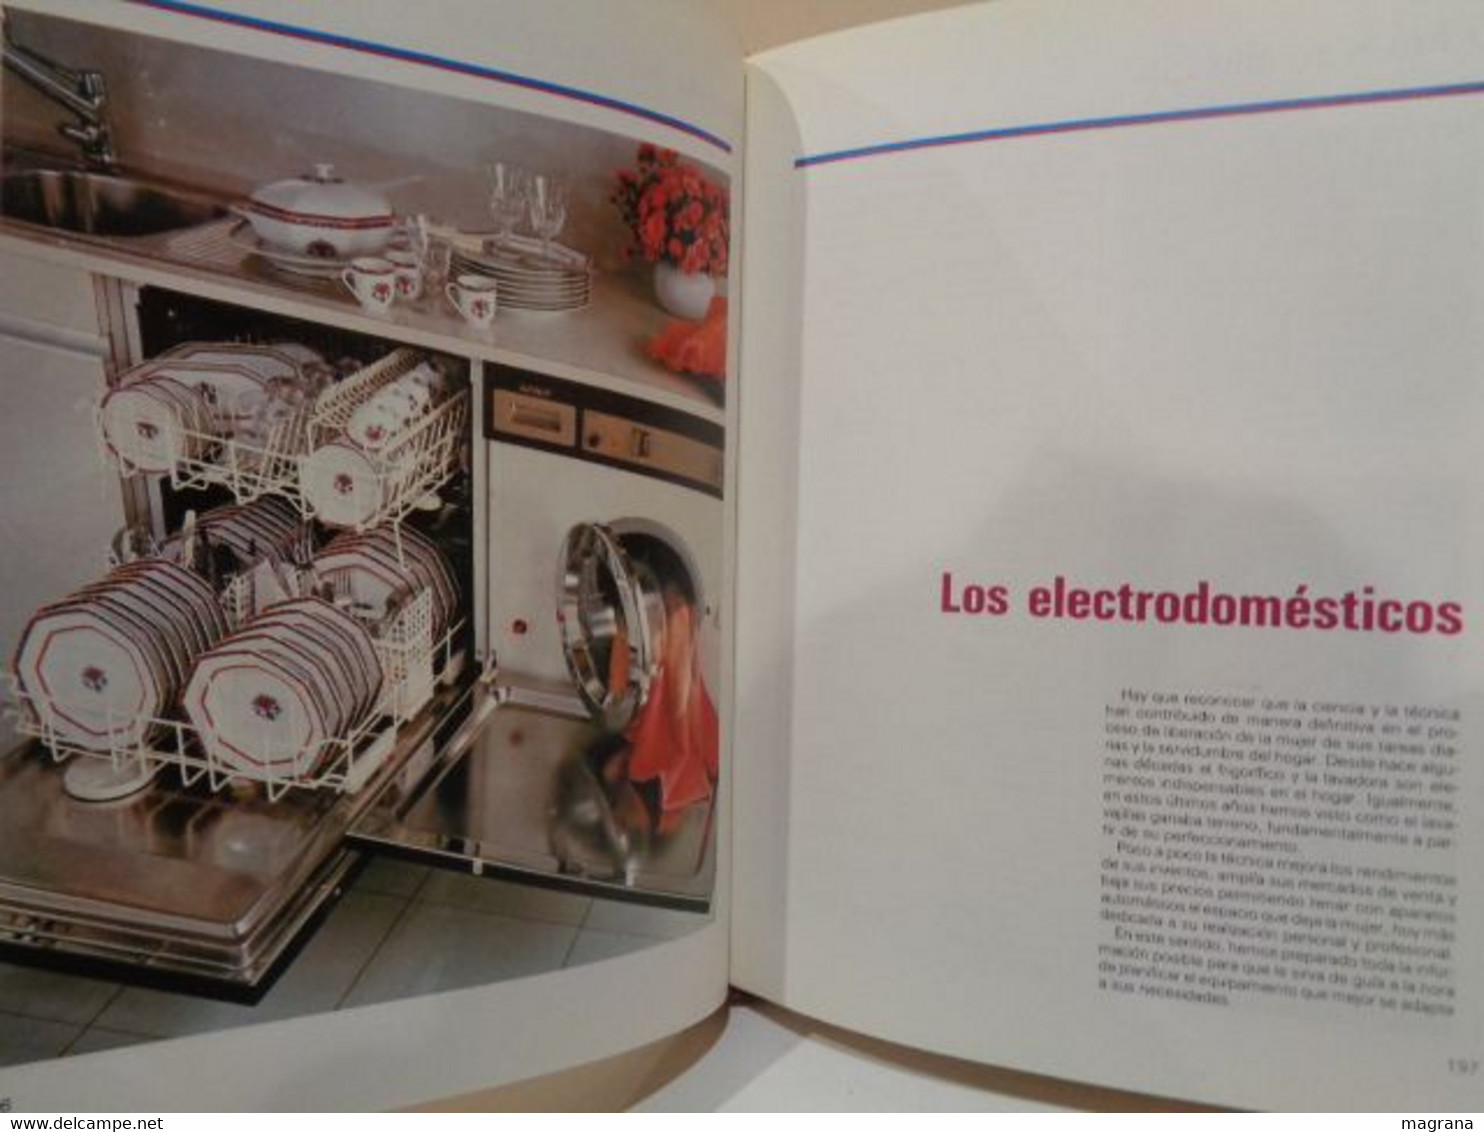 Gran Manual del Hogar Moderno. Editorial Círculo de Lectores. 1985. 448 páginas.